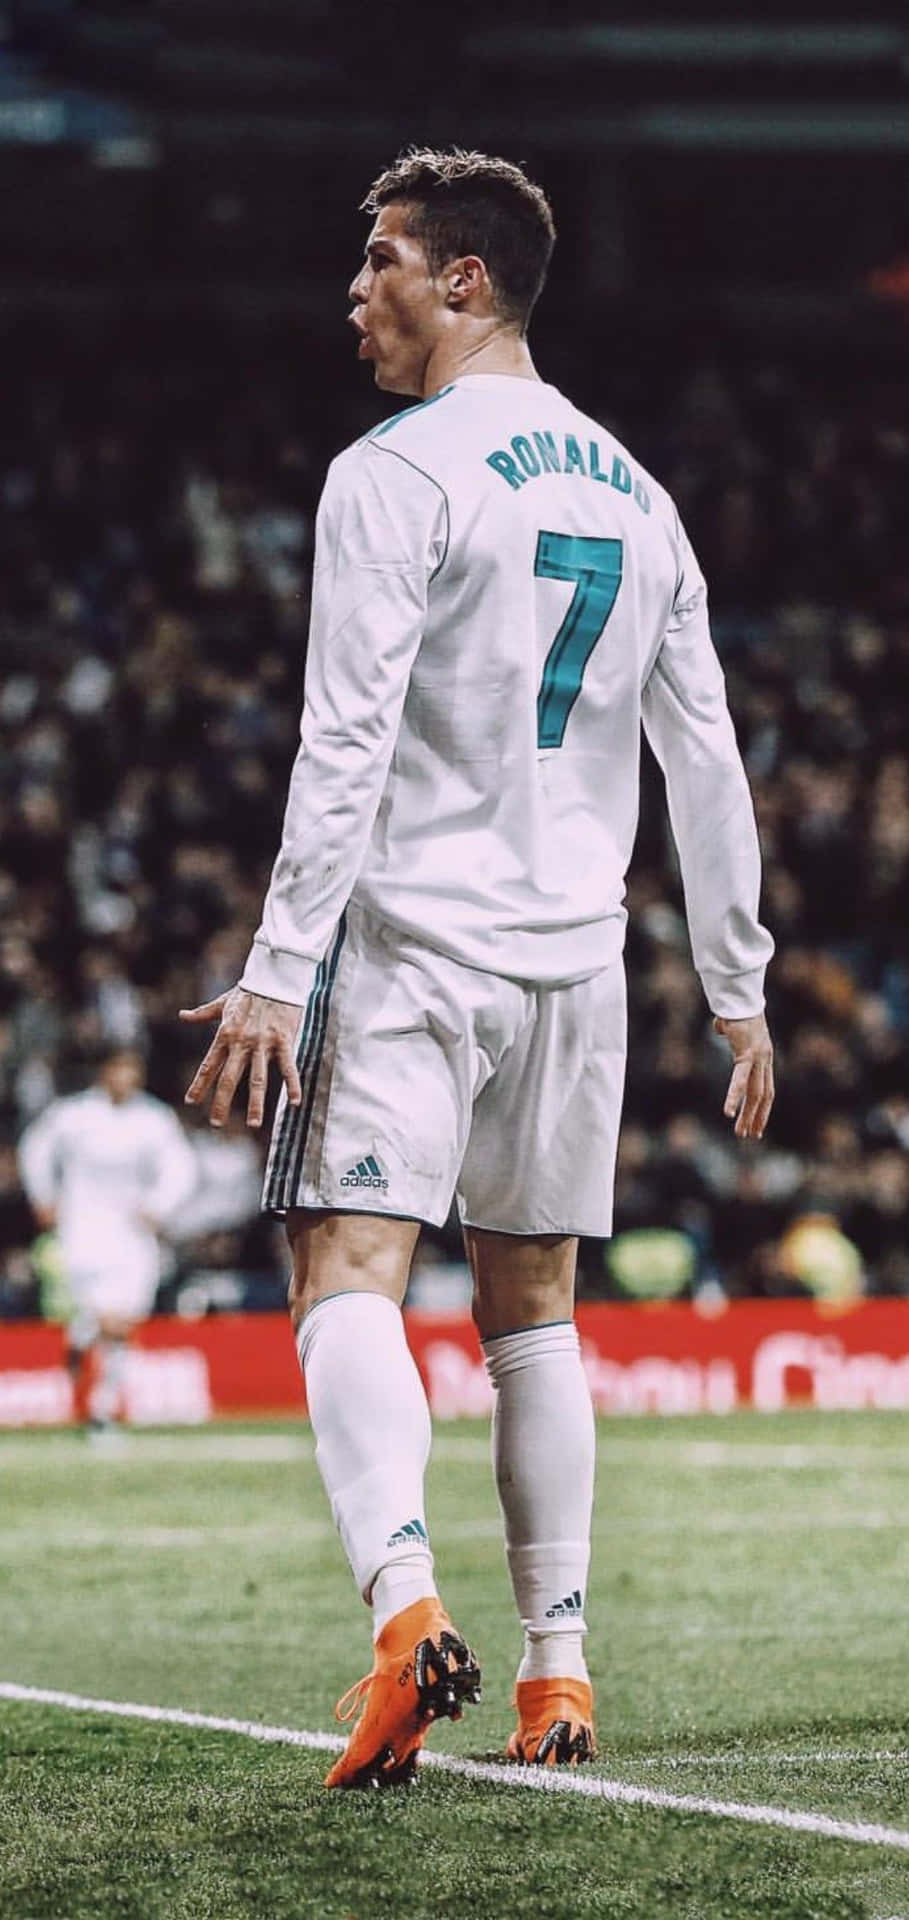 Världsberömdacristiano Ronaldo I Action På Fotbollsplanen. Wallpaper